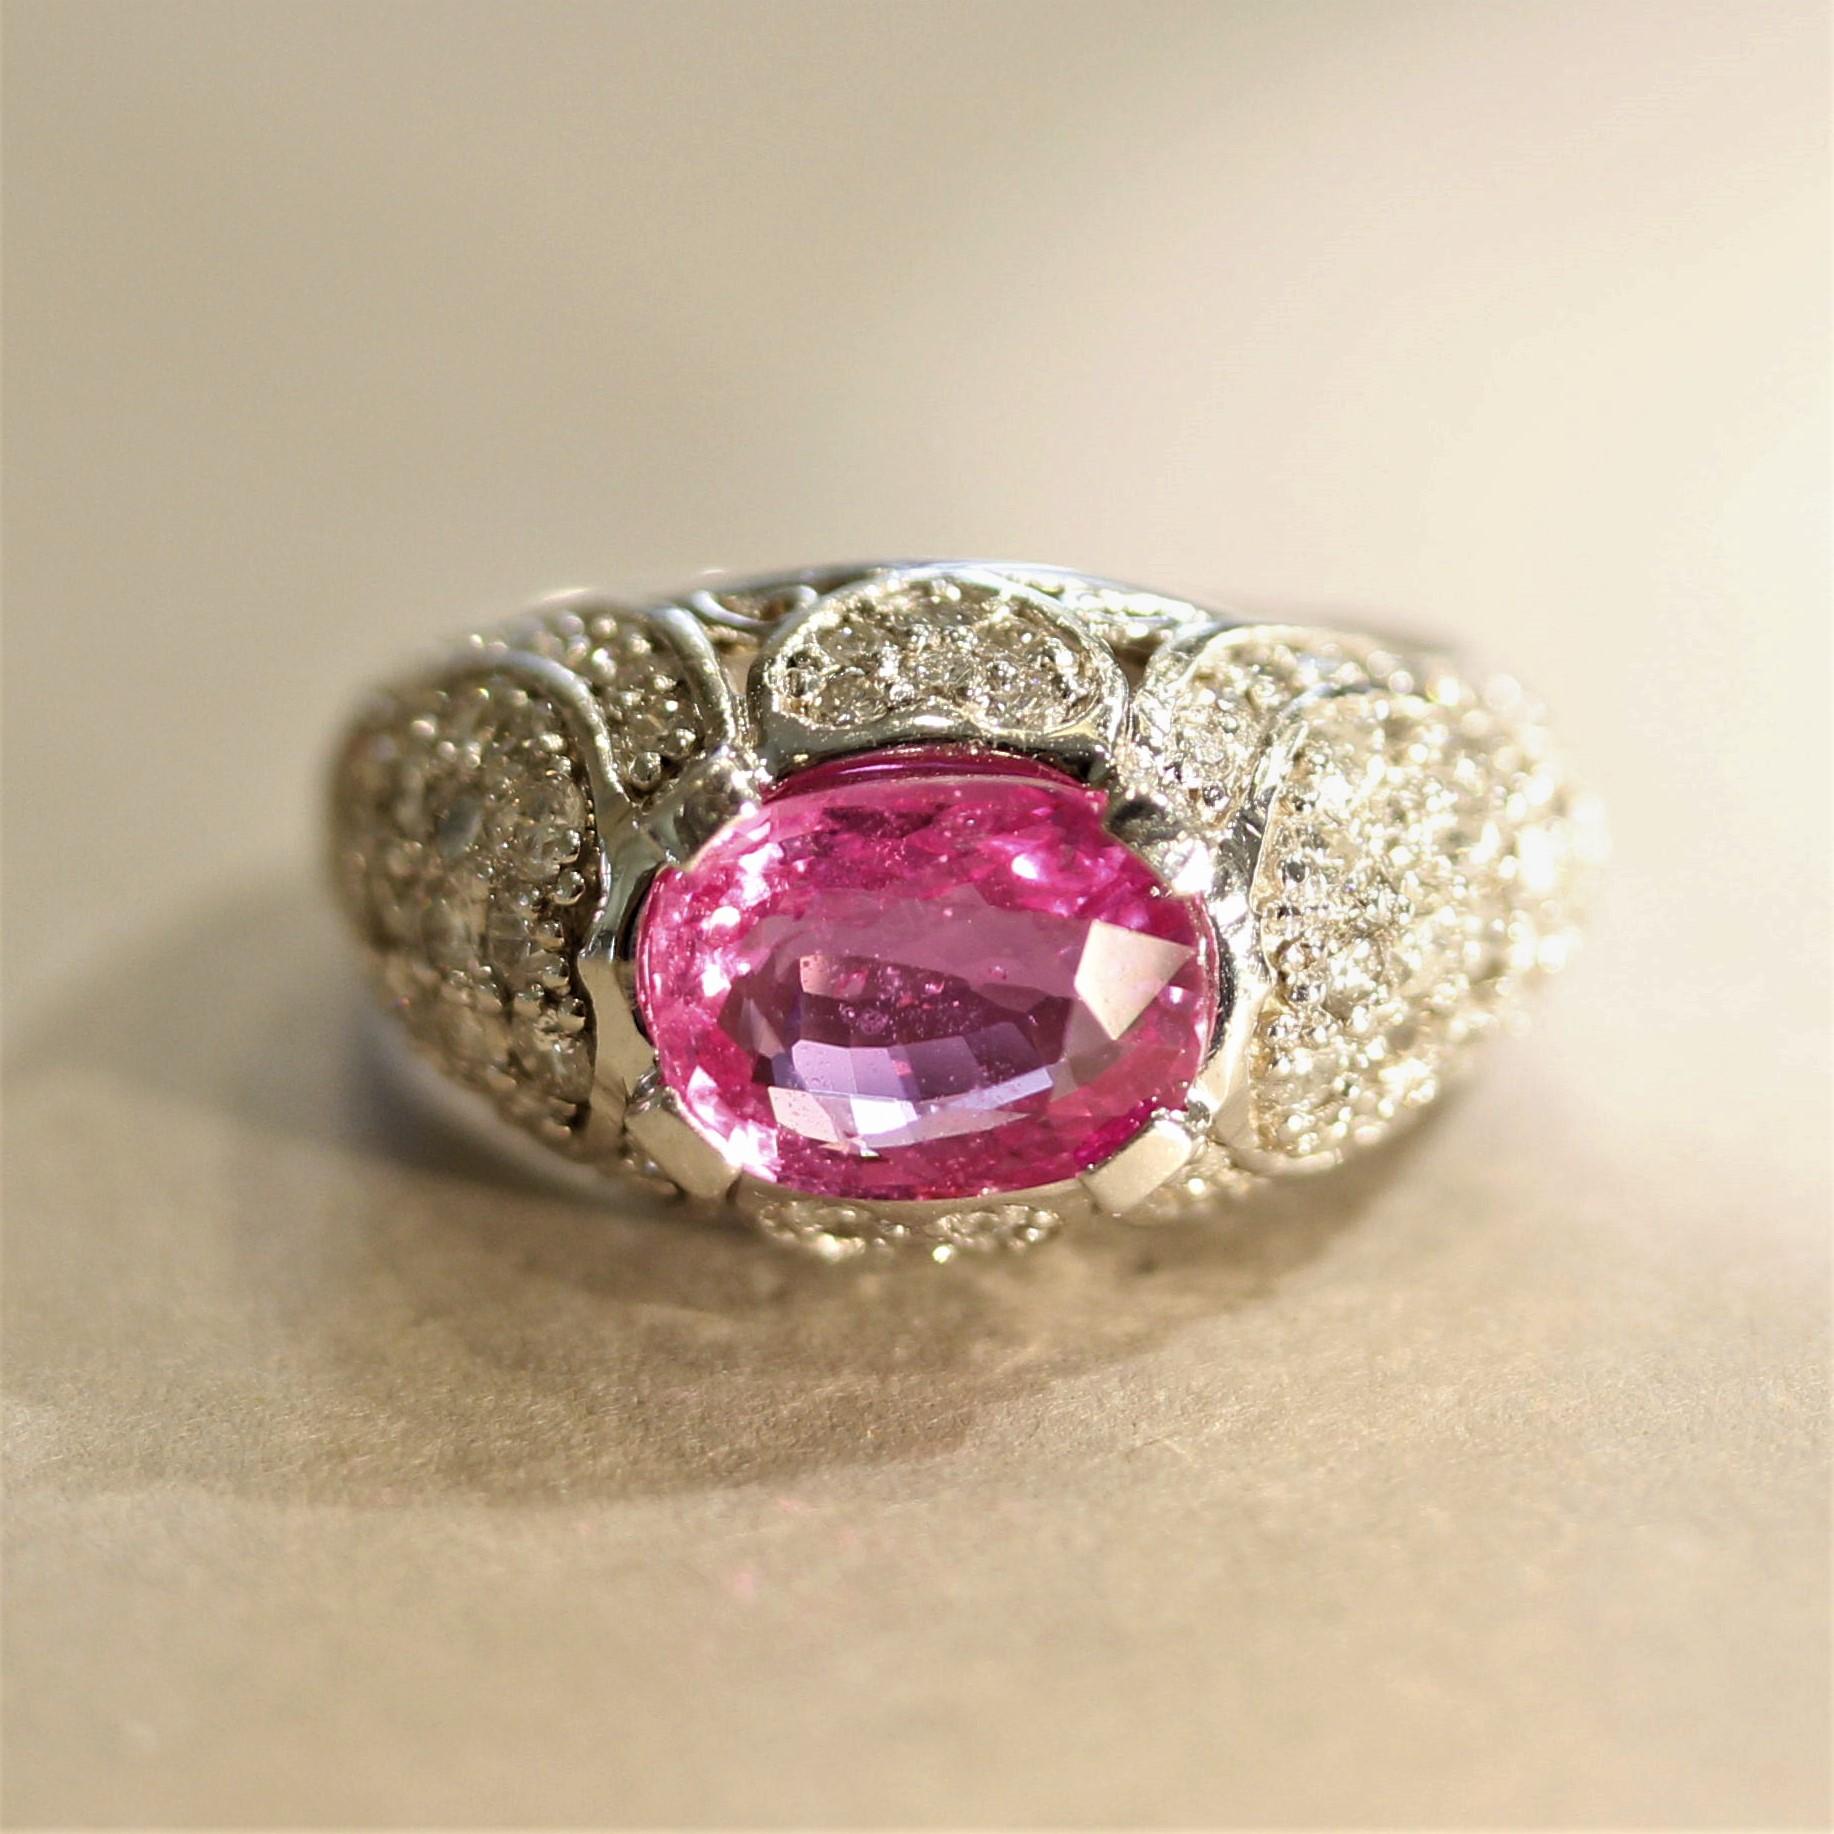 Ein sehr feiner rosa Saphir steht im Mittelpunkt! Er wiegt 3,02 Karat und hat eine leuchtend pinke Farbe mit hervorragender Brillanz und Klarheit. Er wird von 1,66 Karat runden Brillanten akzentuiert, die in der Galerie des Rings gefasst sind, die